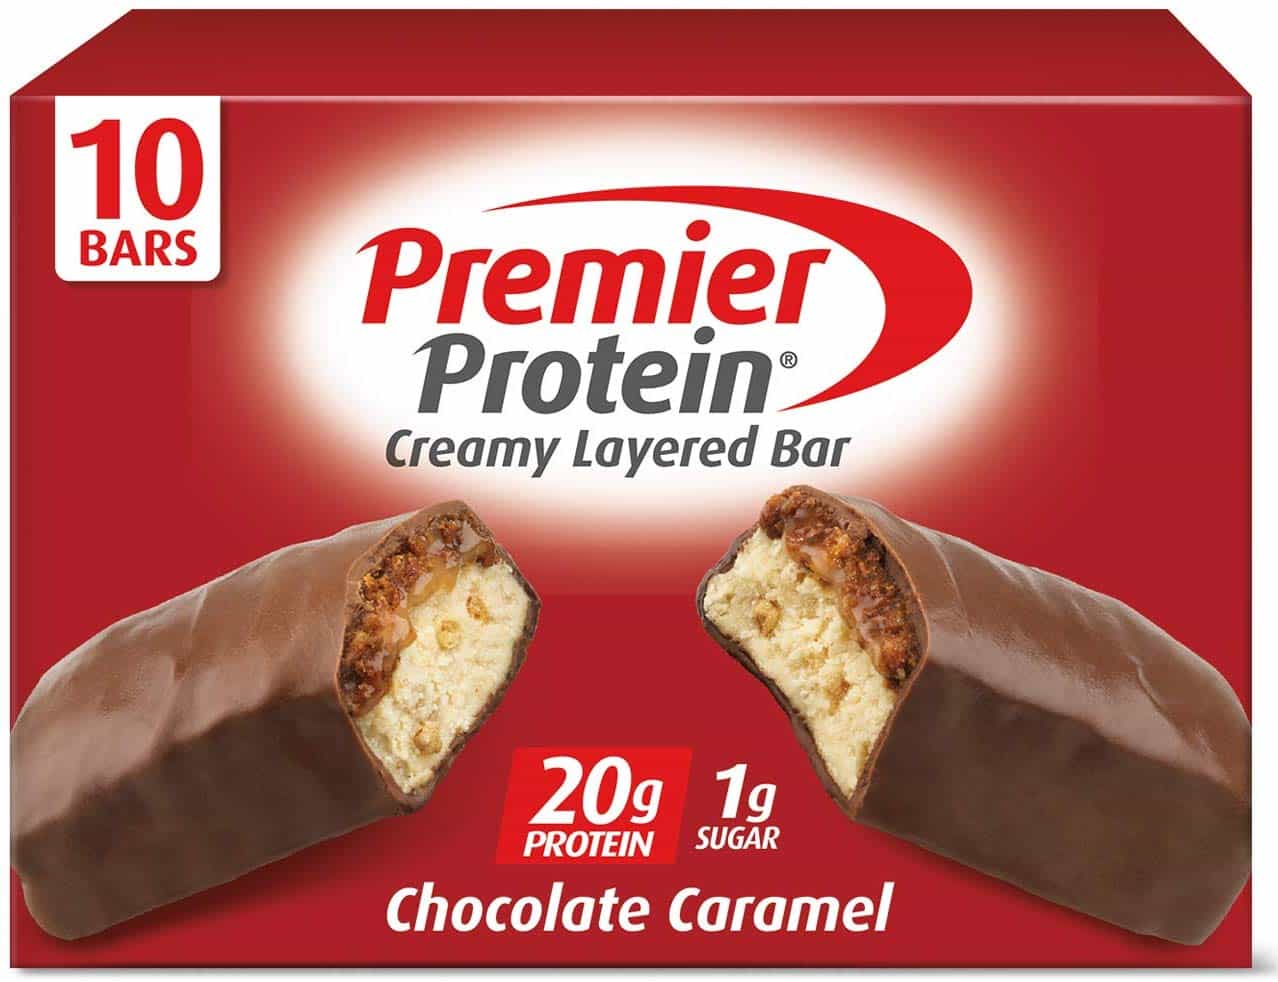 Premier Protein 20g Protein bar, Chocolate Caramel $8.46 (REG $14.99)